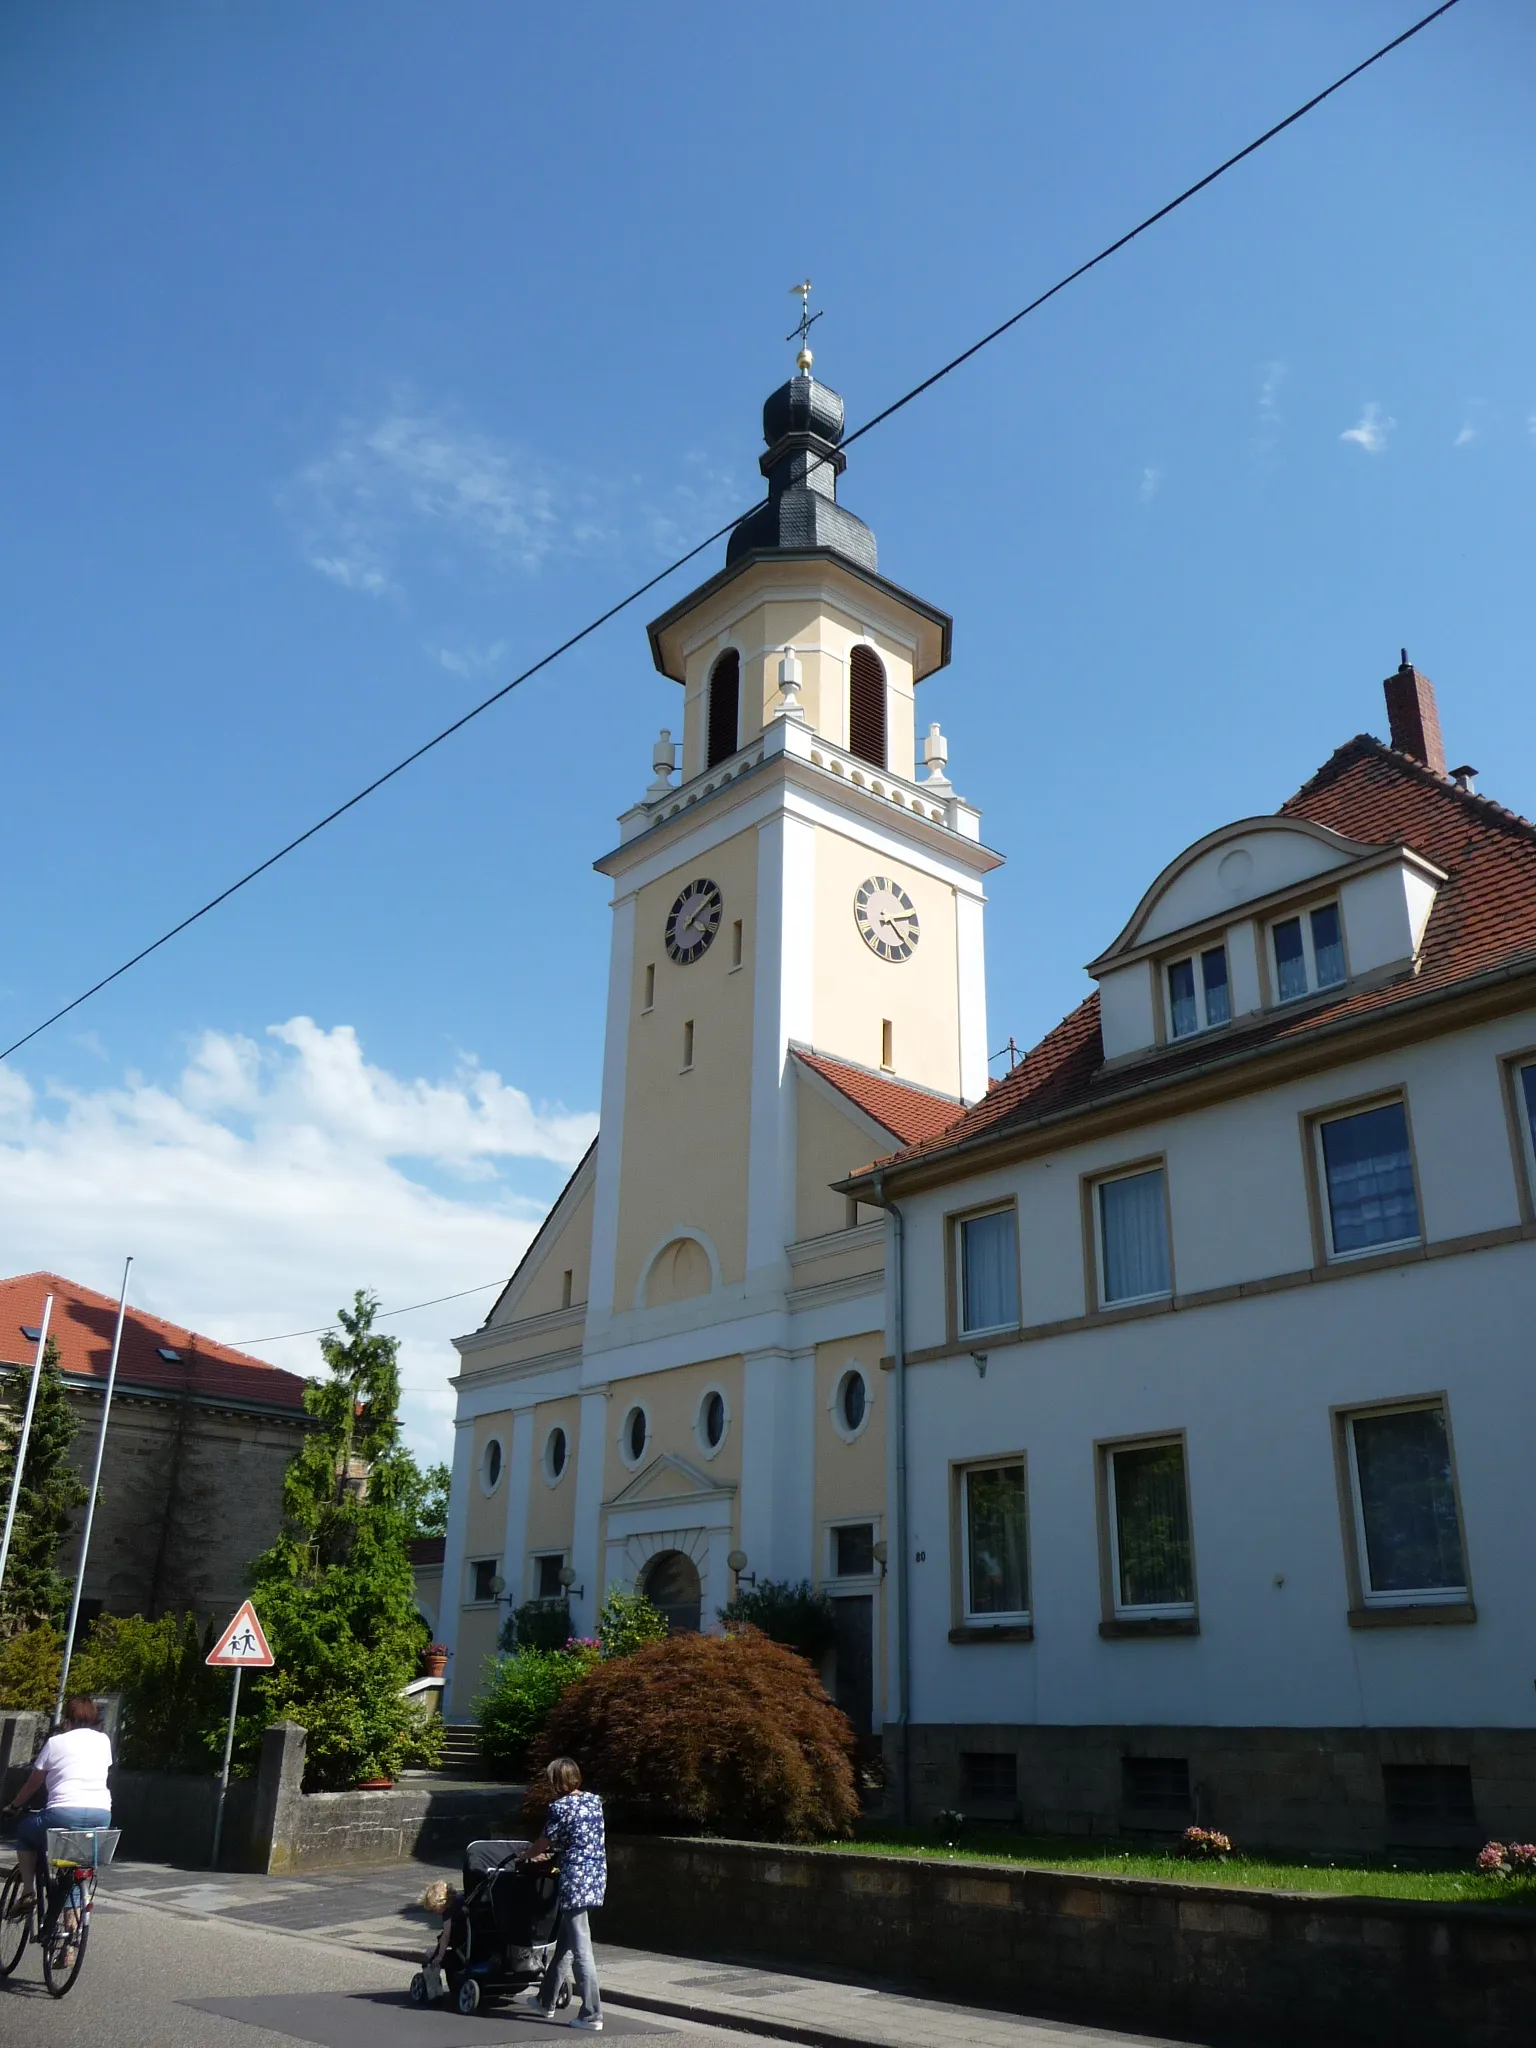 Photo showing: Queichheim ist ein Stadtteil von Landau in der Pfalz in Rheinland-Pfalz.